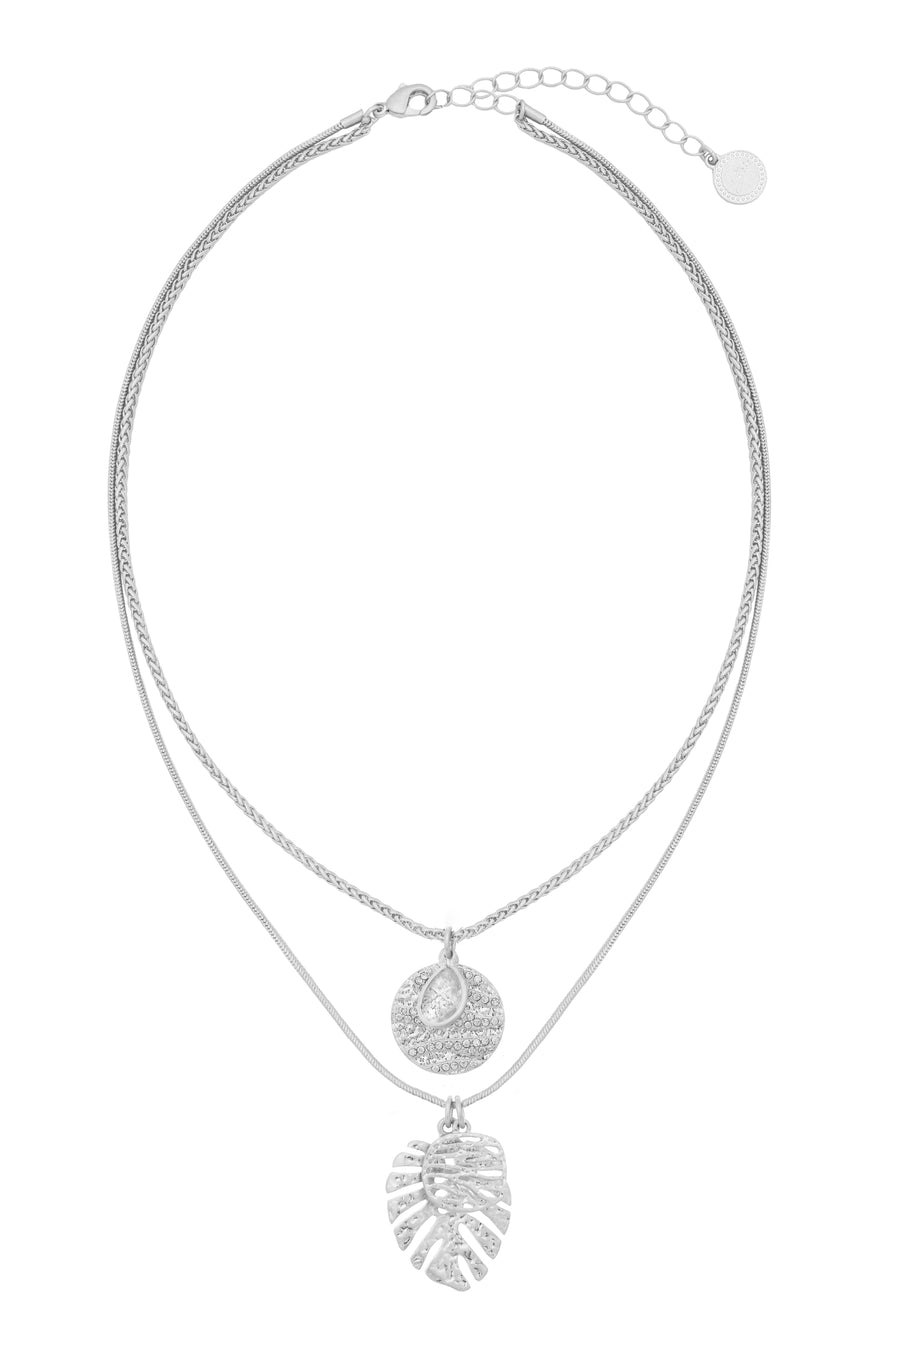 Bibi Bijoux Silver Palma Necklace